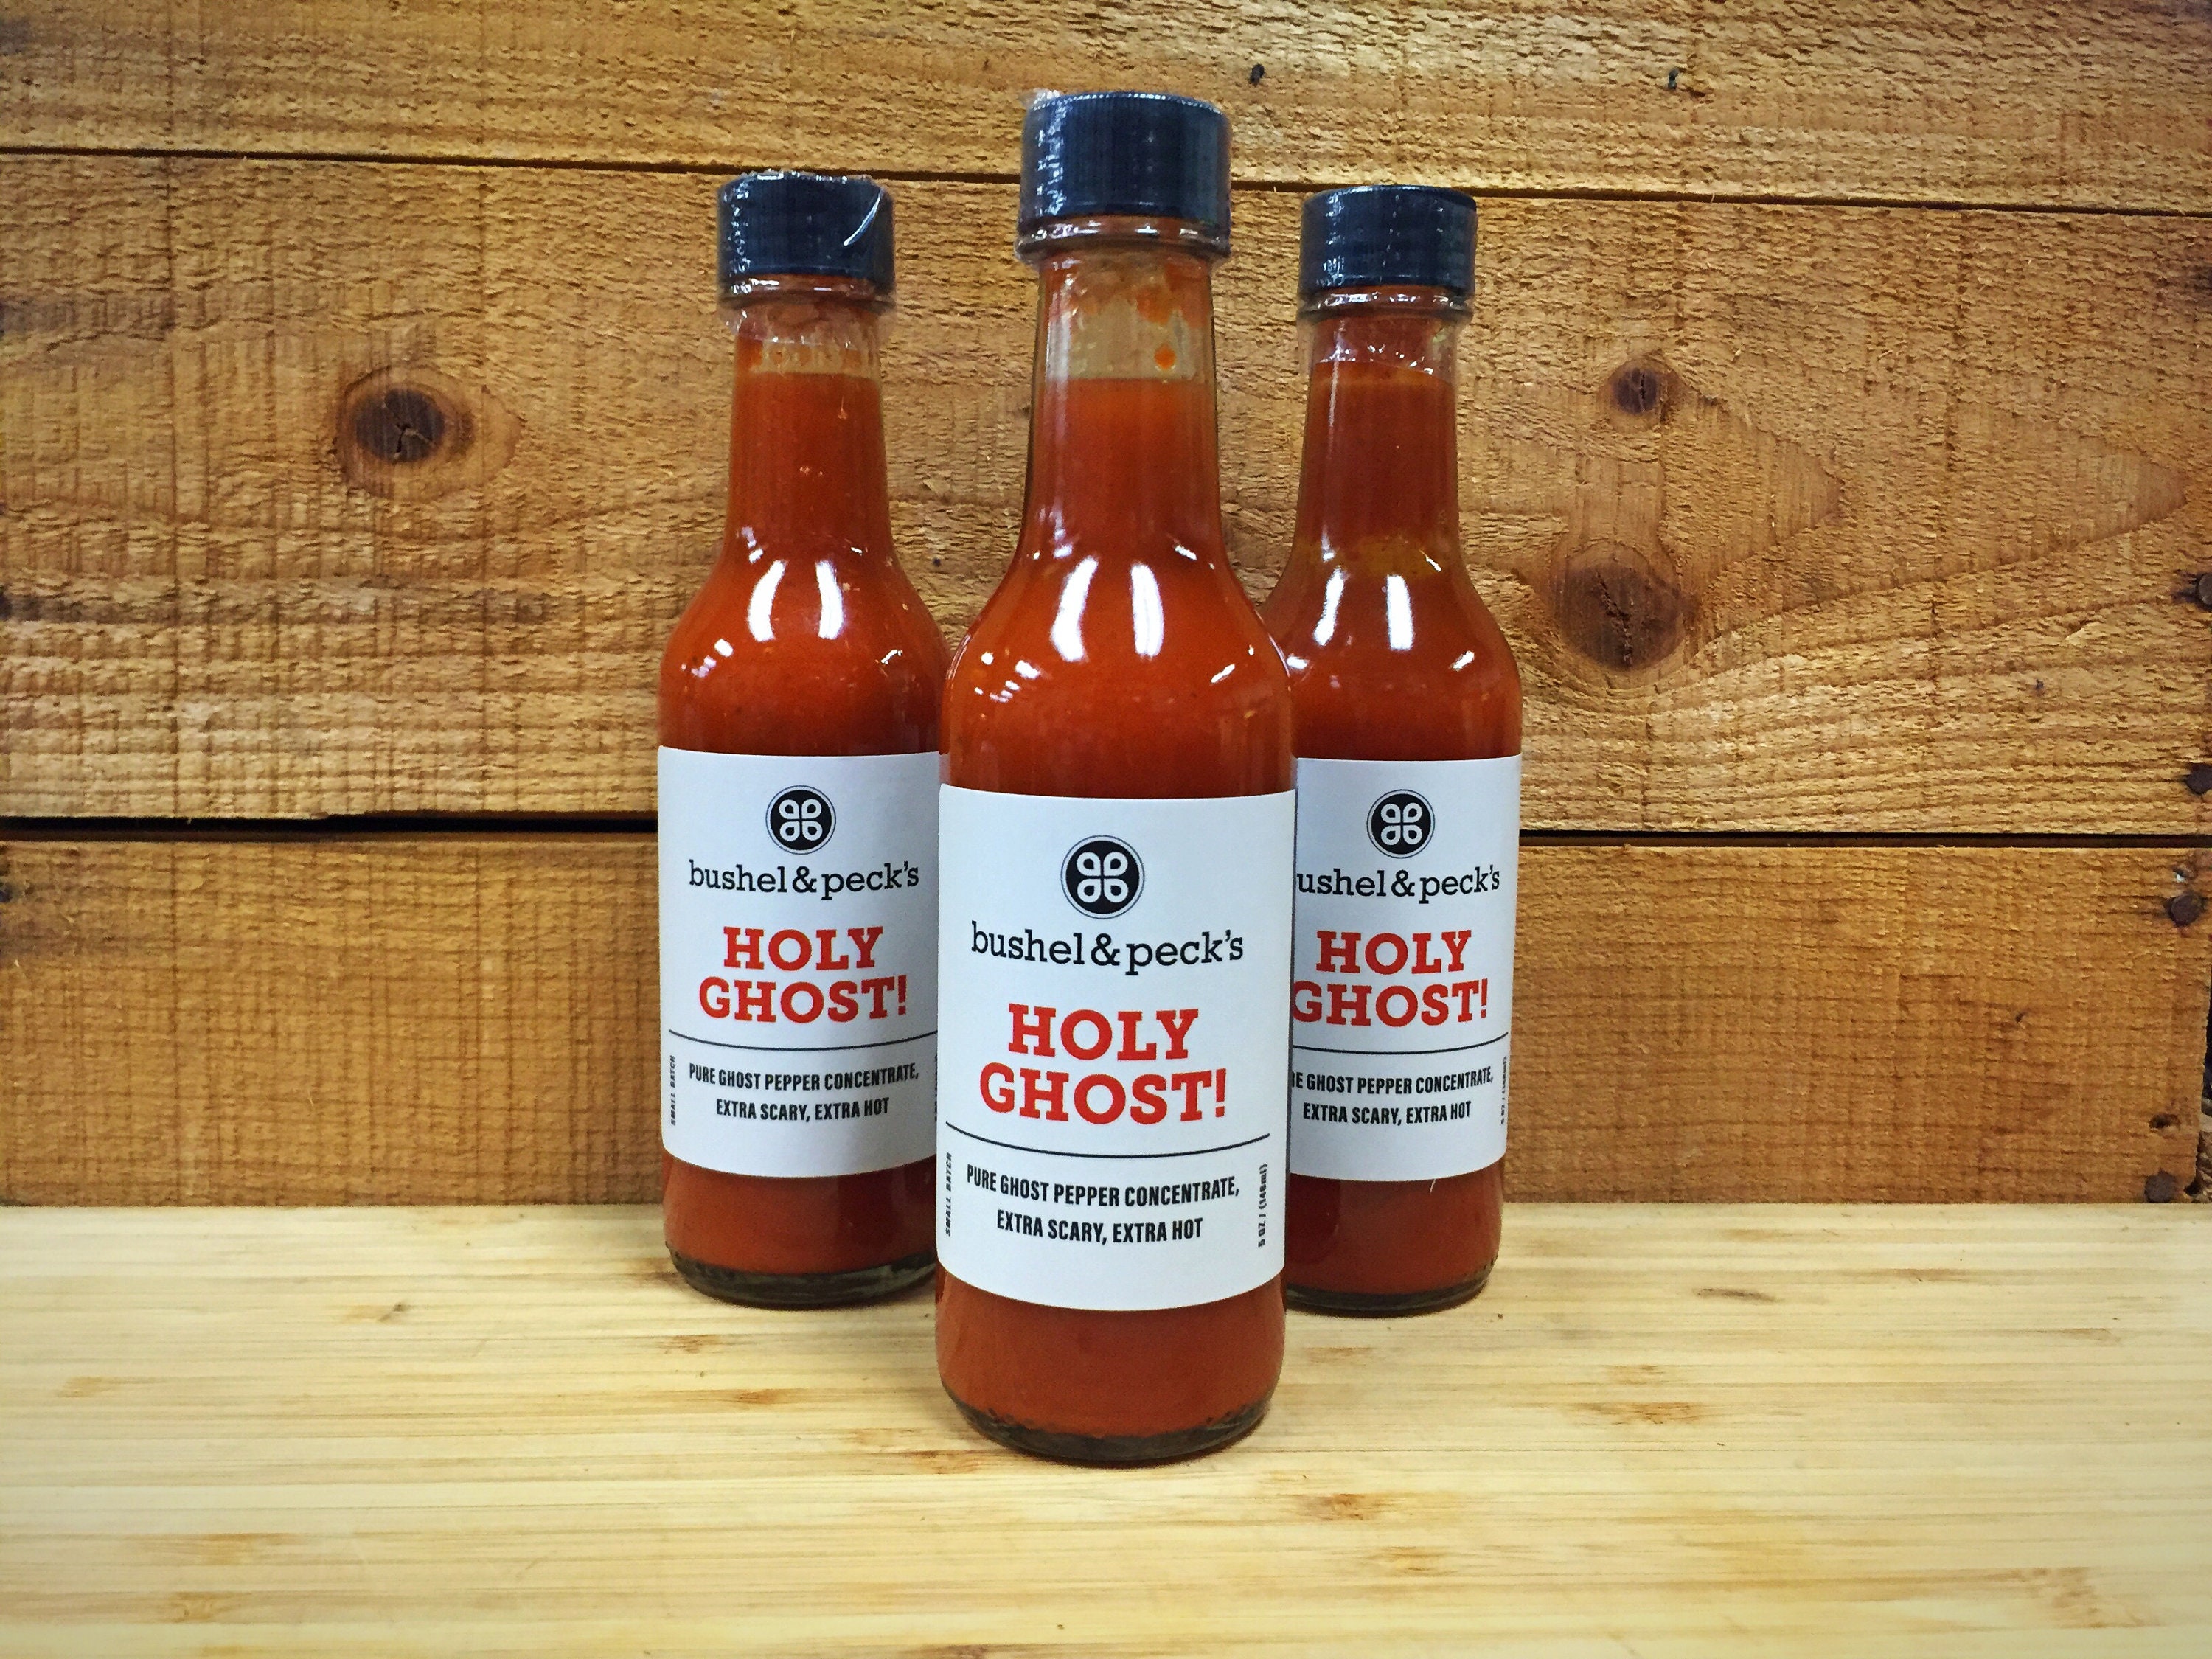 Da'Bomb Ghost Pepper Hot Sauce – Made in KC